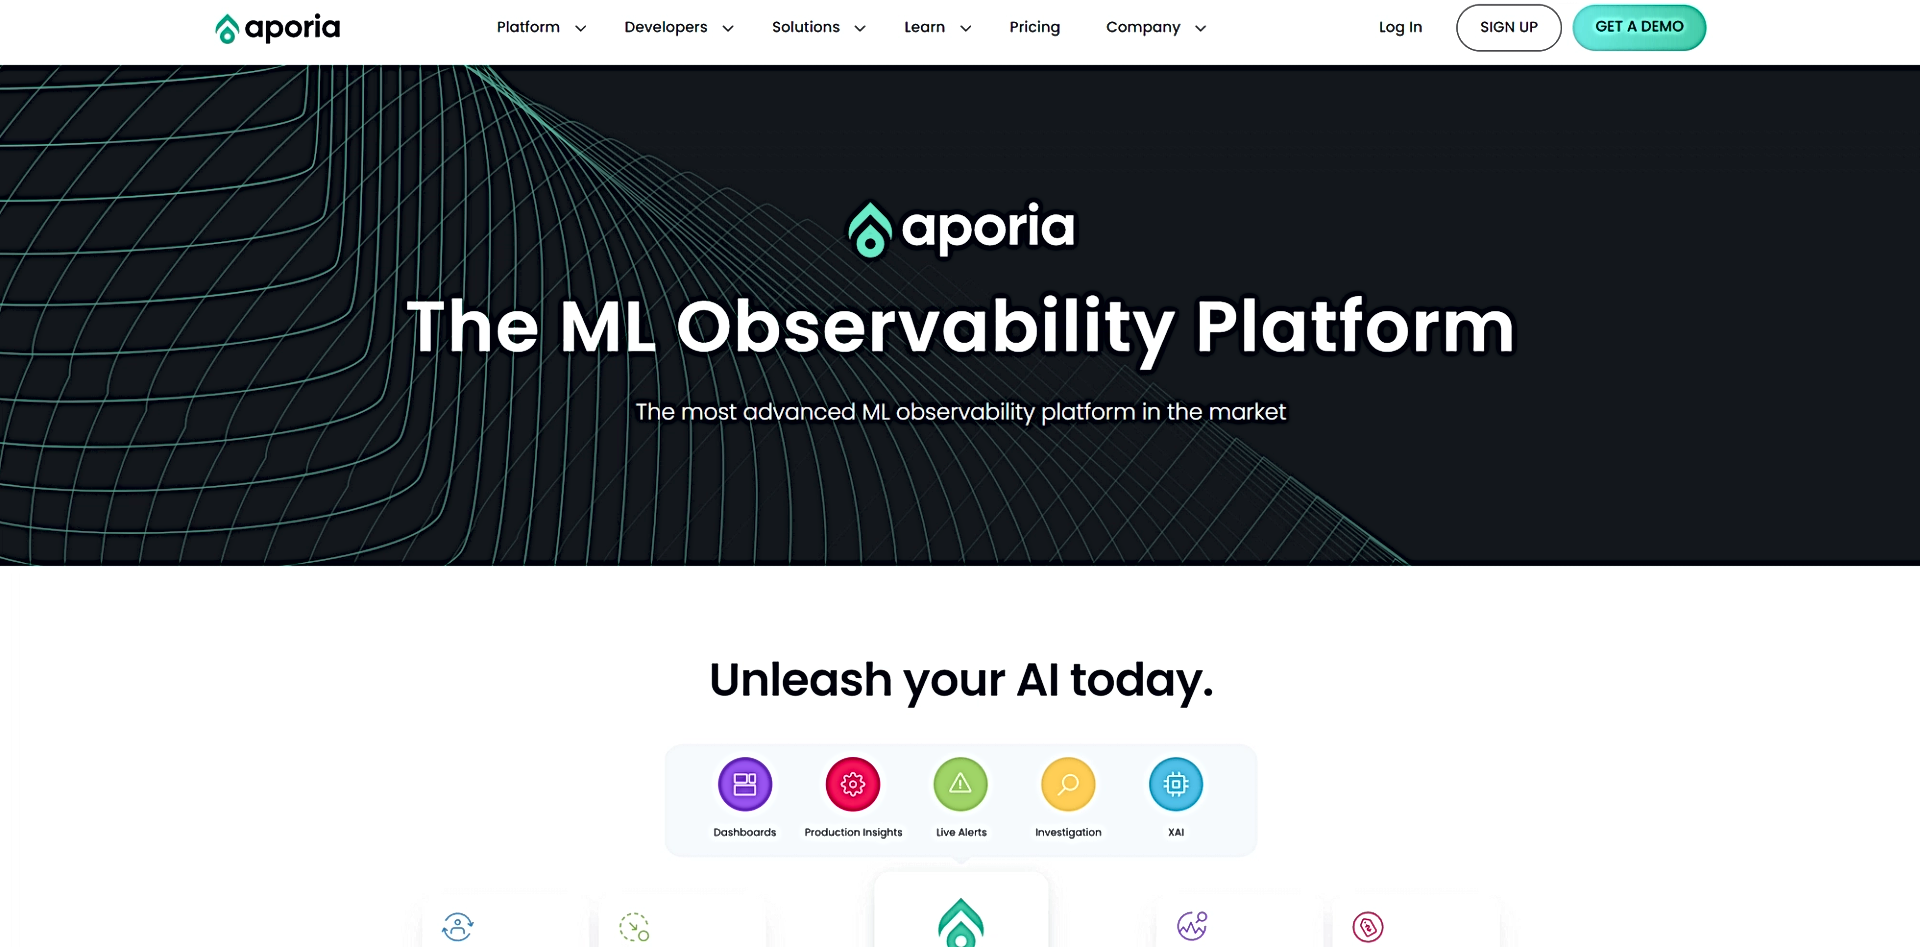 Aporia featured